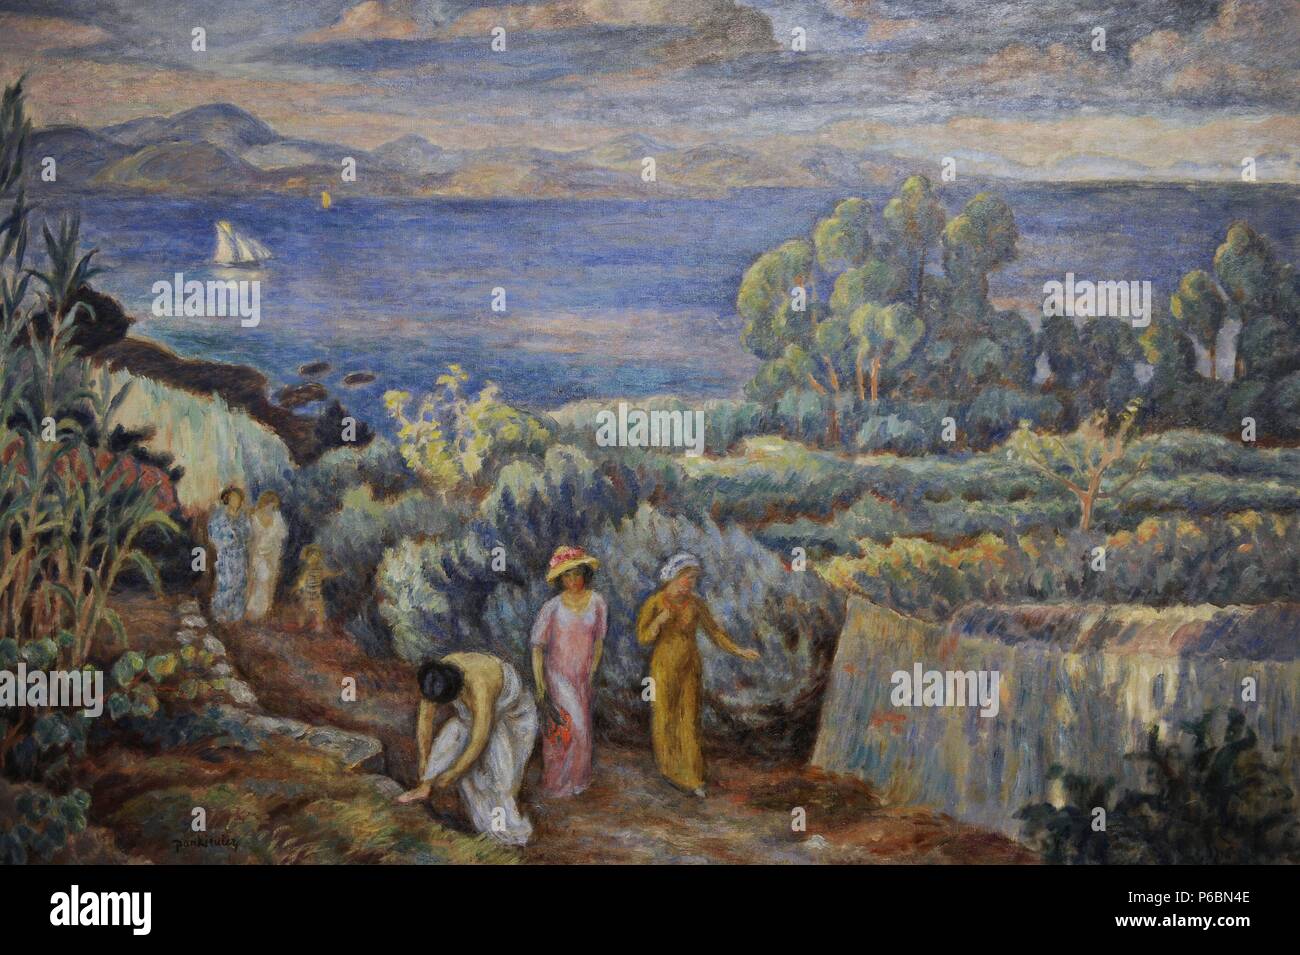 Jozef Pankiewicz (1866-1940). Peintre polonais. Retour d'une baignade (la mer près de St Tropez), ch. 1911. Musée National Gallery. Cracovie. La Pologne. Banque D'Images